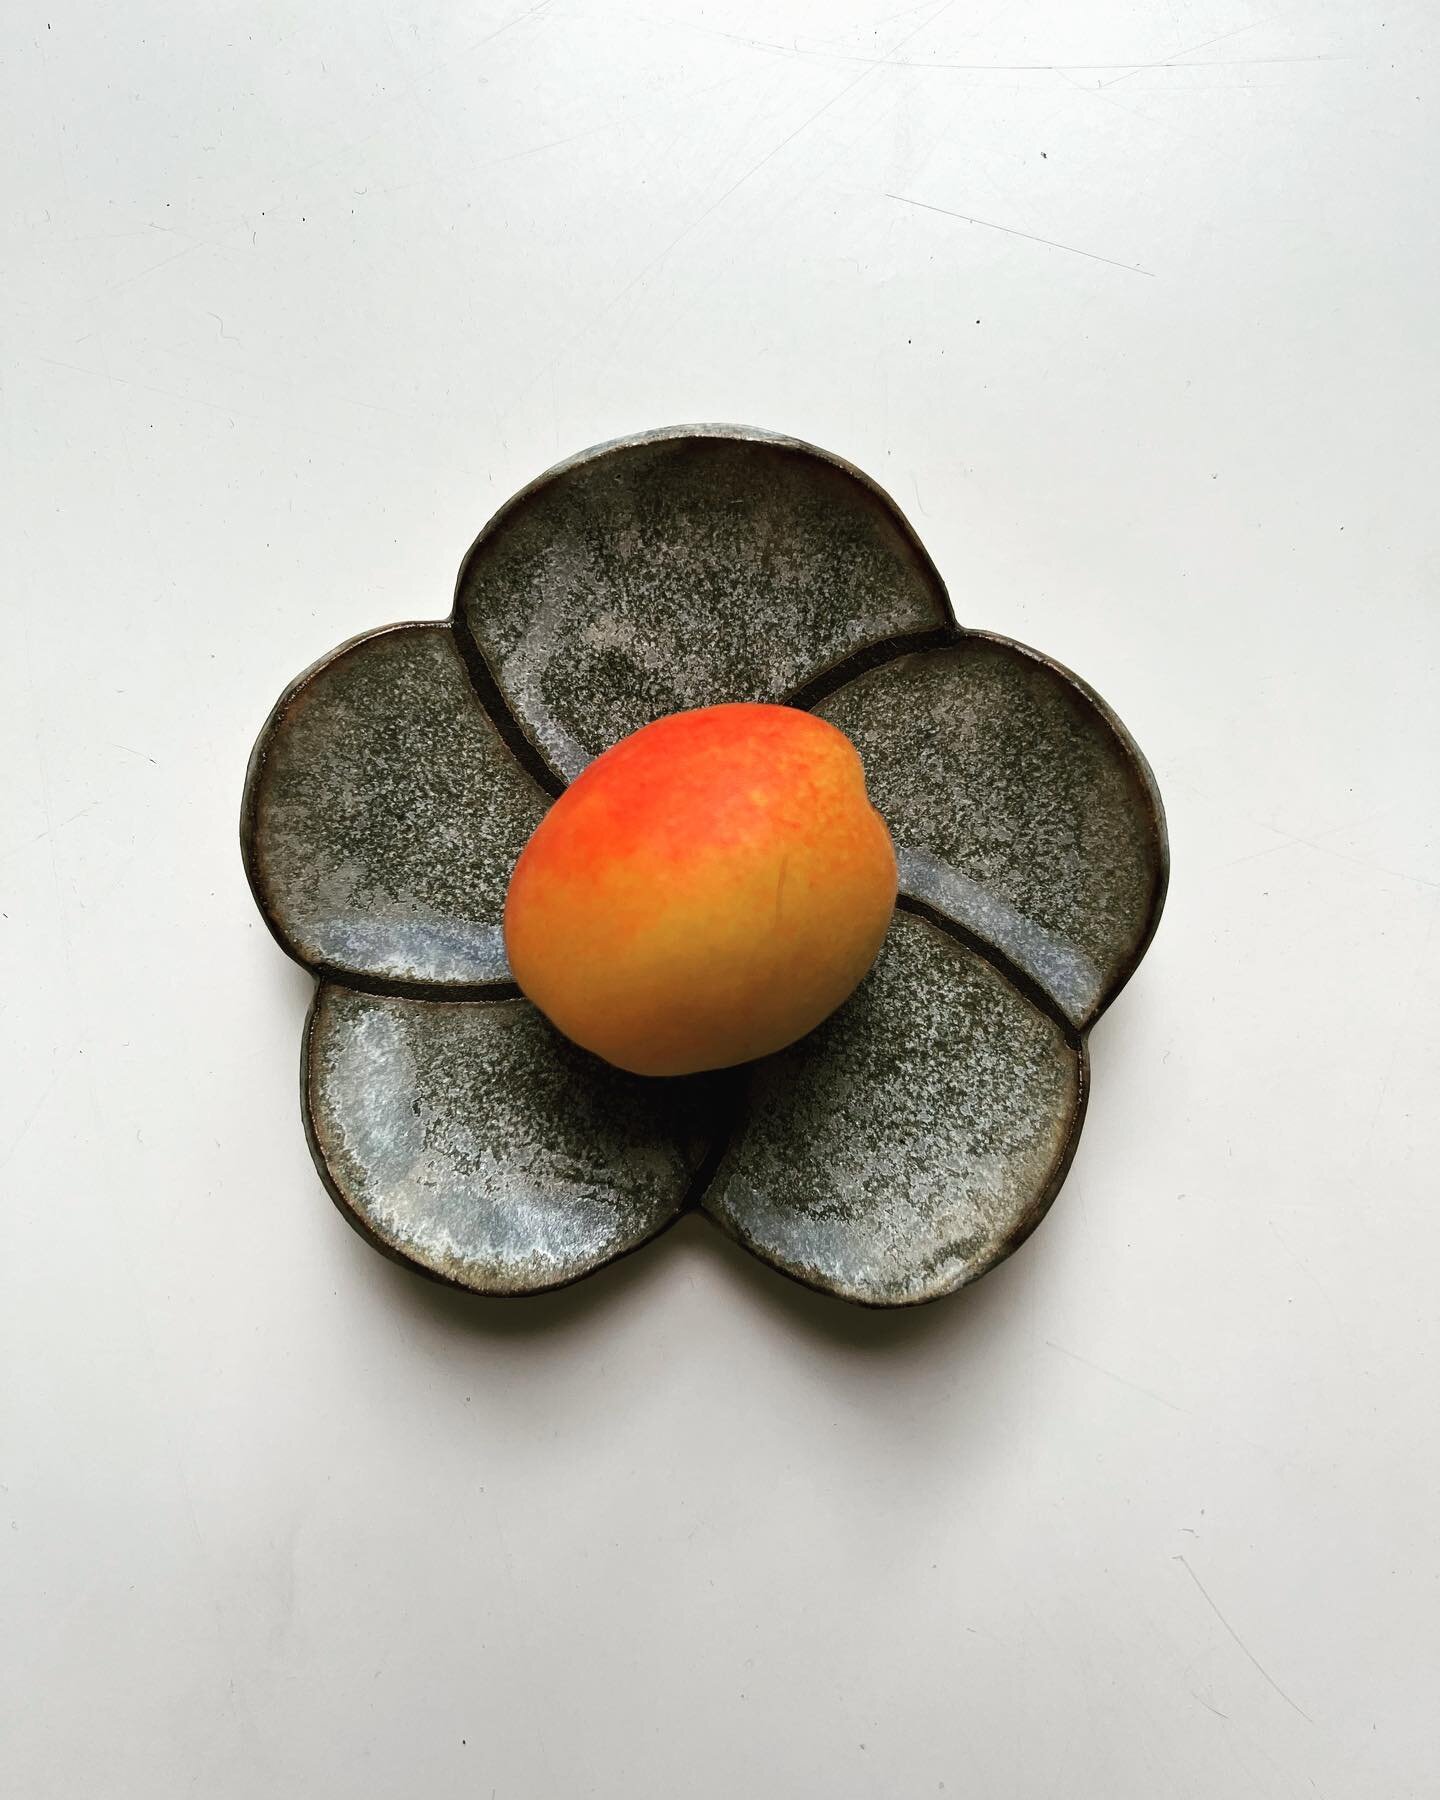 Prunus Mume for #umeboshi 

#nihon_mono_berlin 
#nihonmono 
#kōgei 
#sunshineonmyplate 
#cheflife 
#eatmygarden 
#tsukemono 
#fermentieren